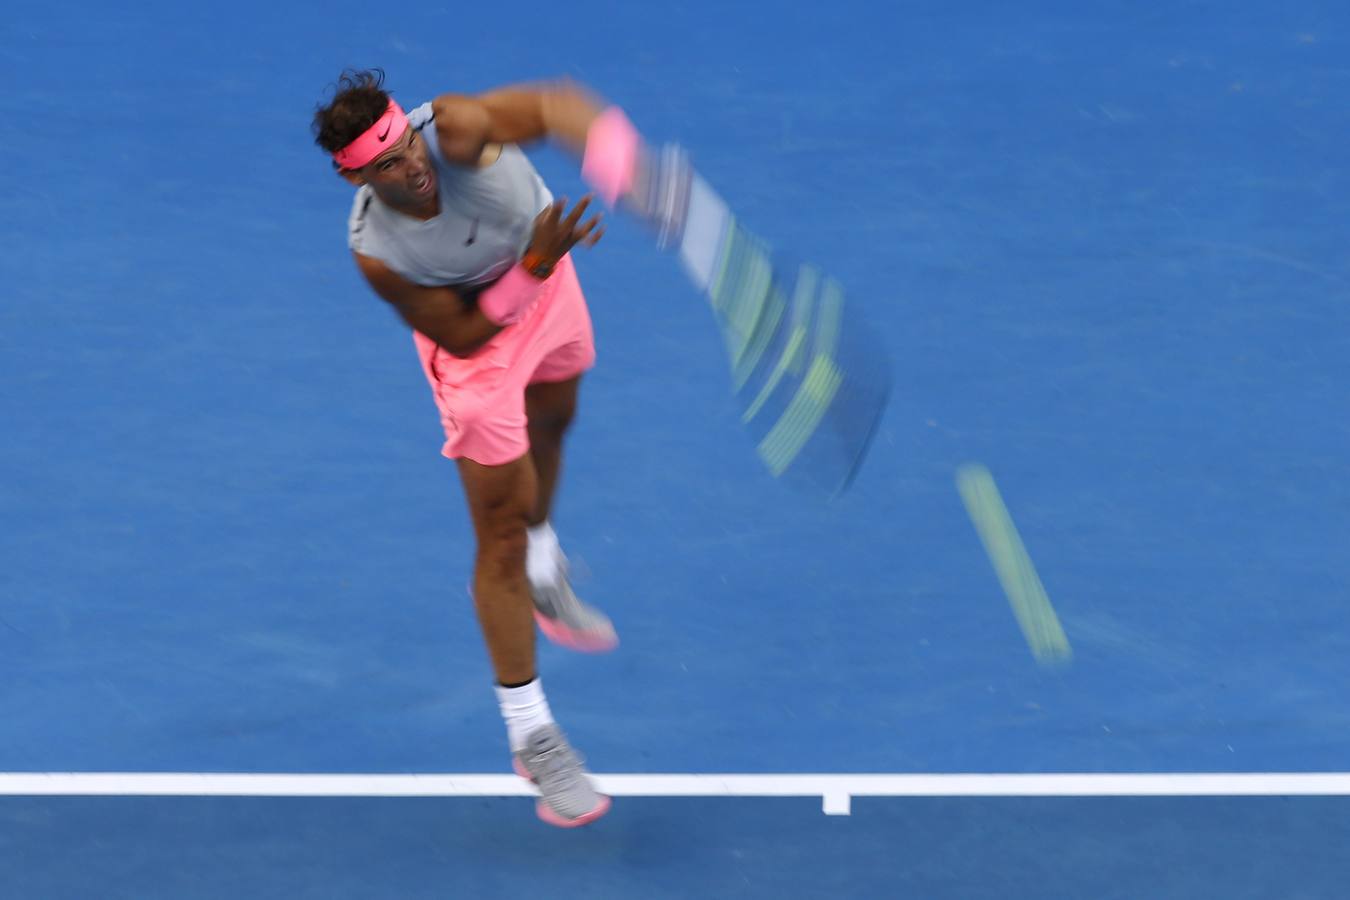 LAs mejores imágenes del partido de tercera ronda del Open de Australia entre Rafa Nadal y Damir Dzumhur.